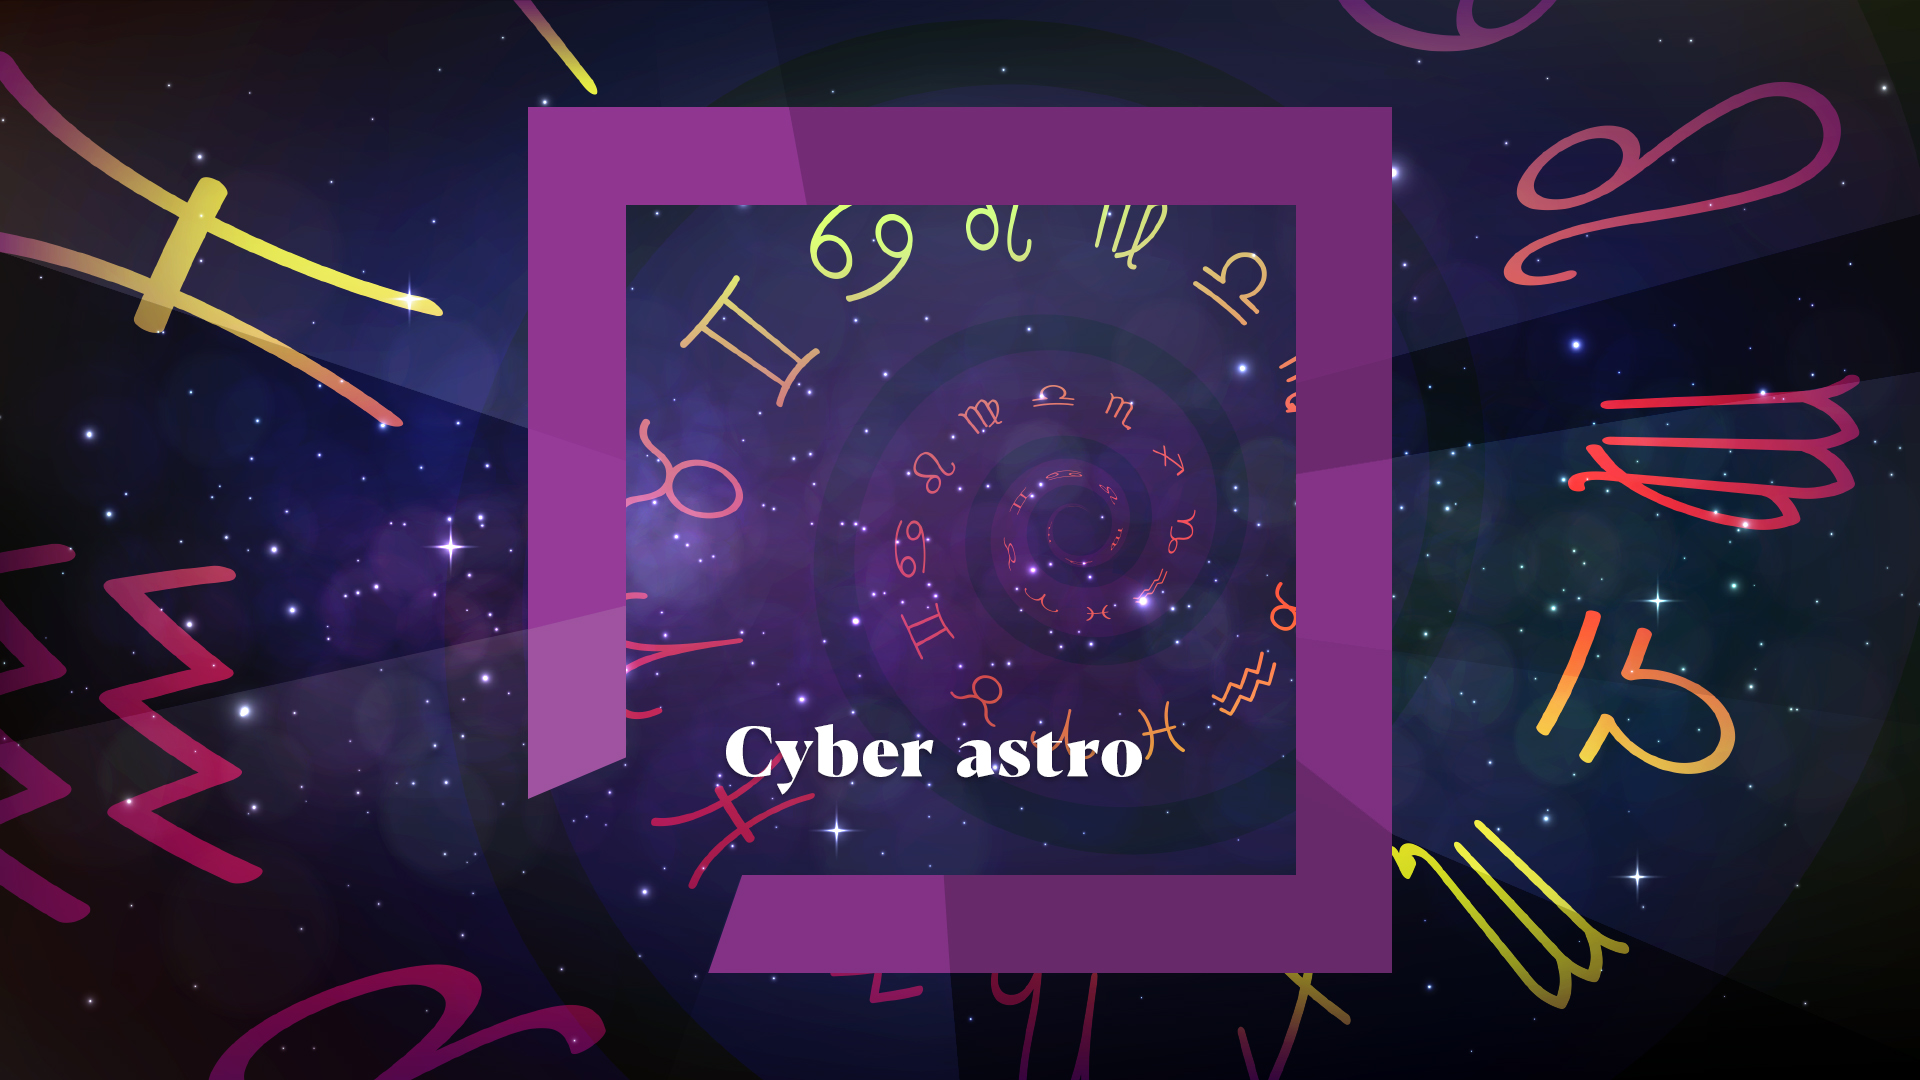 Cyber astro